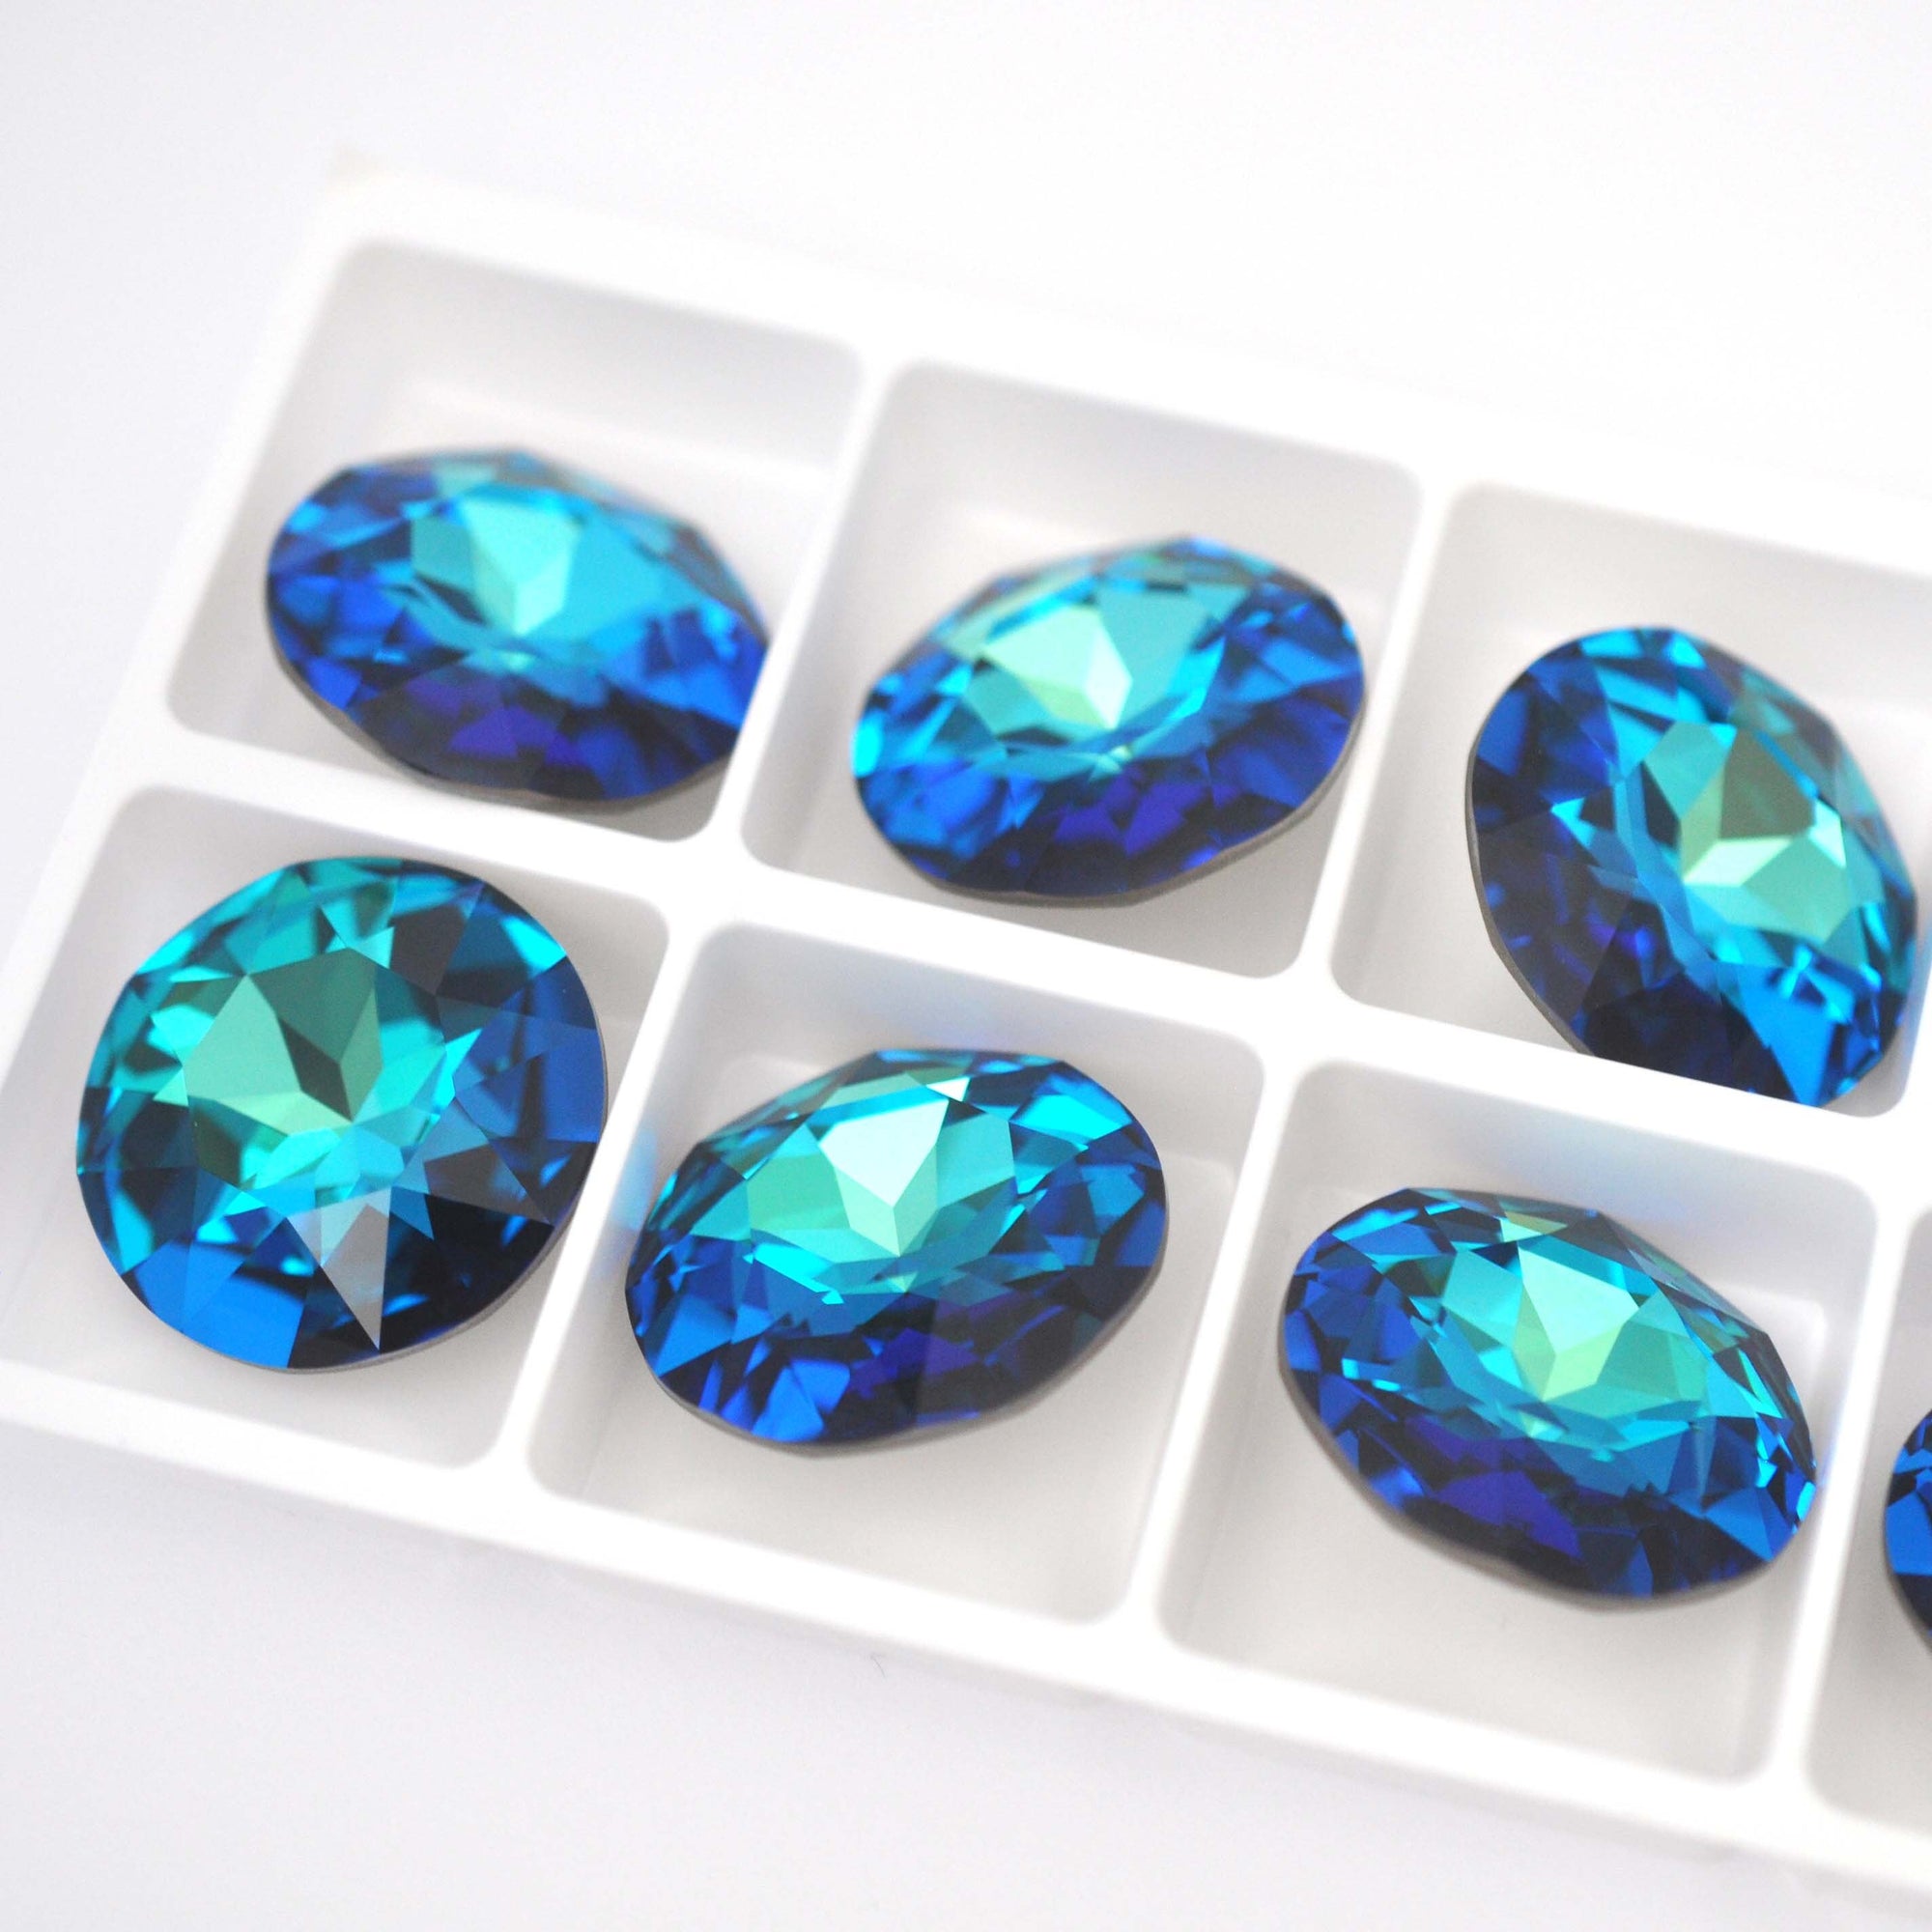 Bermuda Blue Round Fancy Stone 1201 Barton Crystal 27mm, 1 Crystal